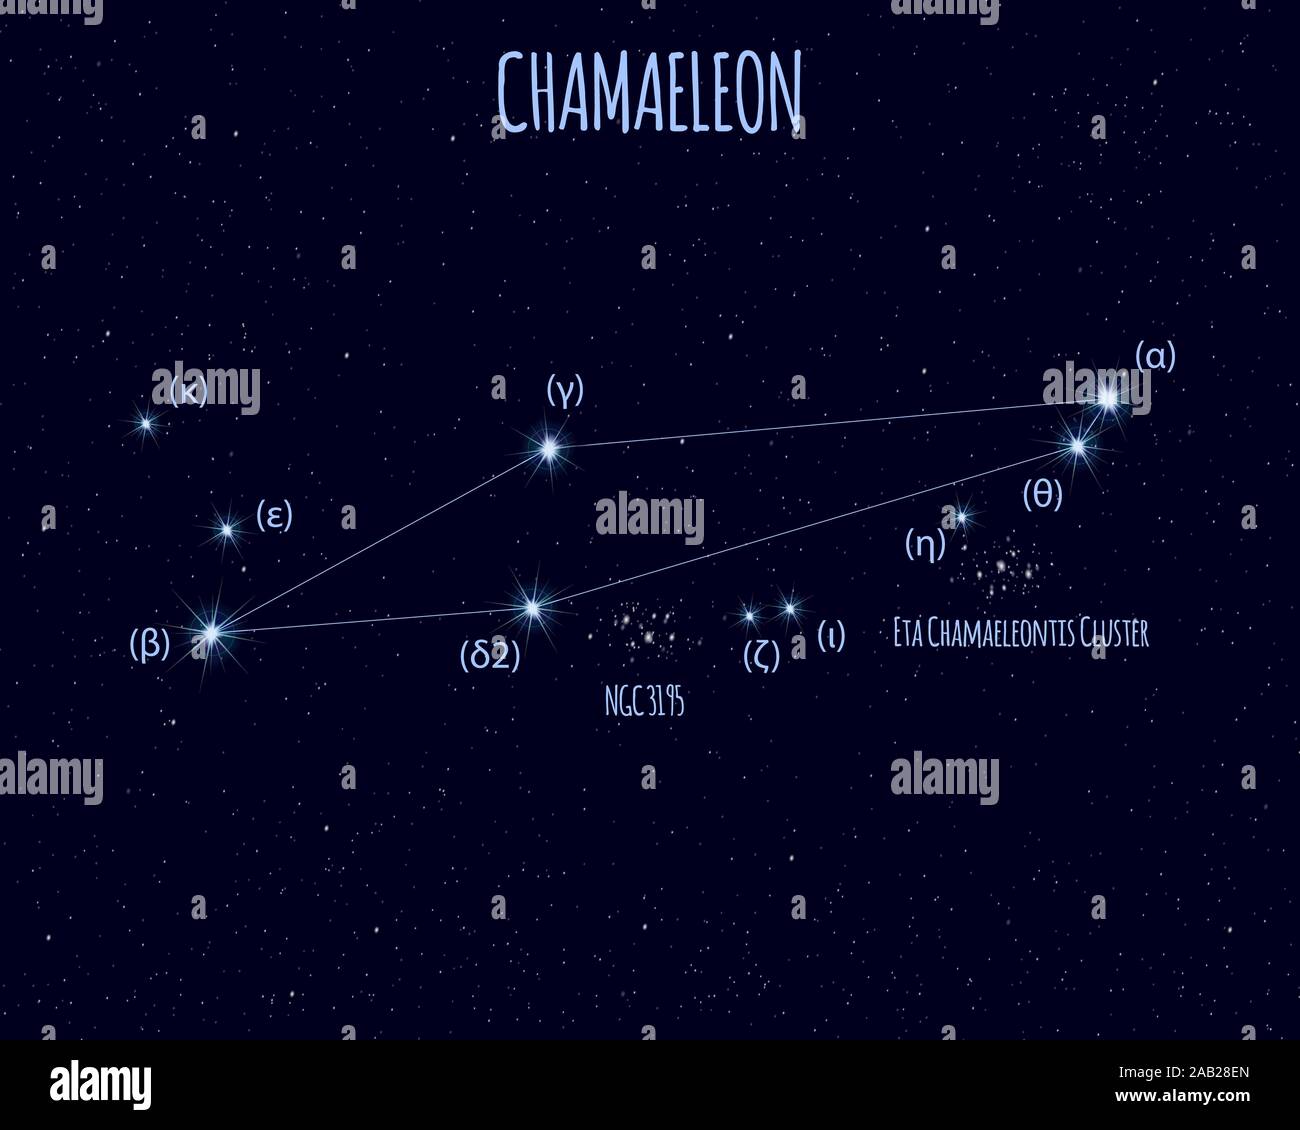 Chamaeleon (il camaleonte) costellazione, illustrazione vettoriale con stelle di base contro il cielo stellato Illustrazione Vettoriale